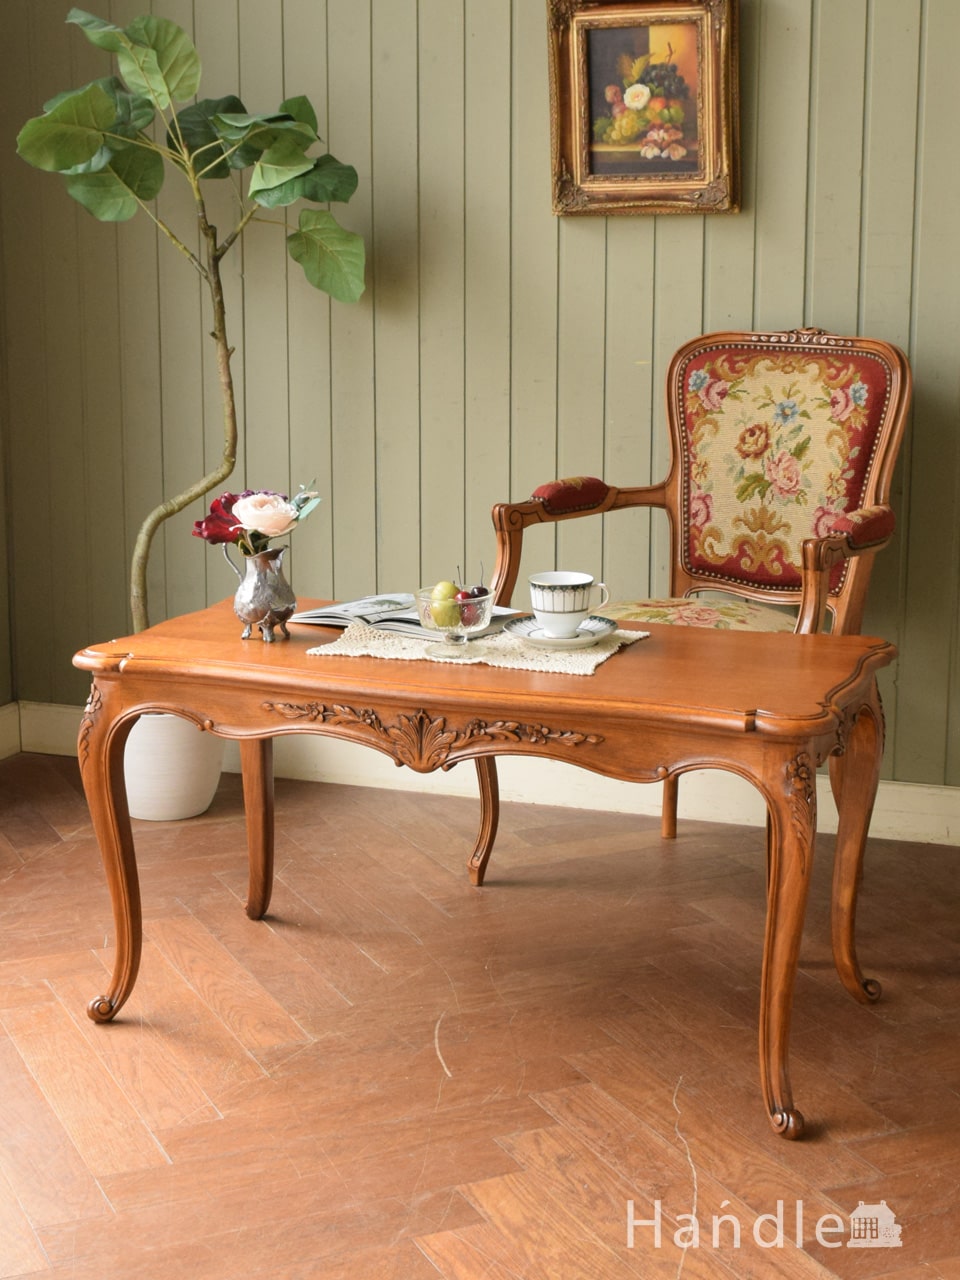 フランスの優雅なアンティークテーブル、お花の彫りが美しい猫足のロー